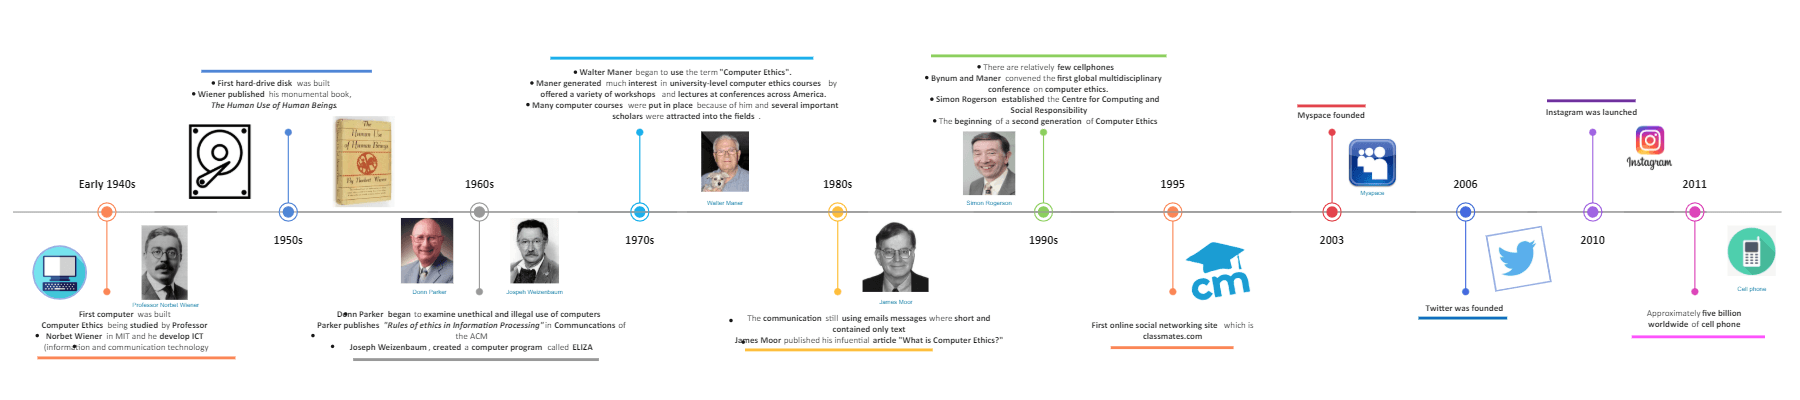 Infográfico da Linha do Tempo da Ética Informática